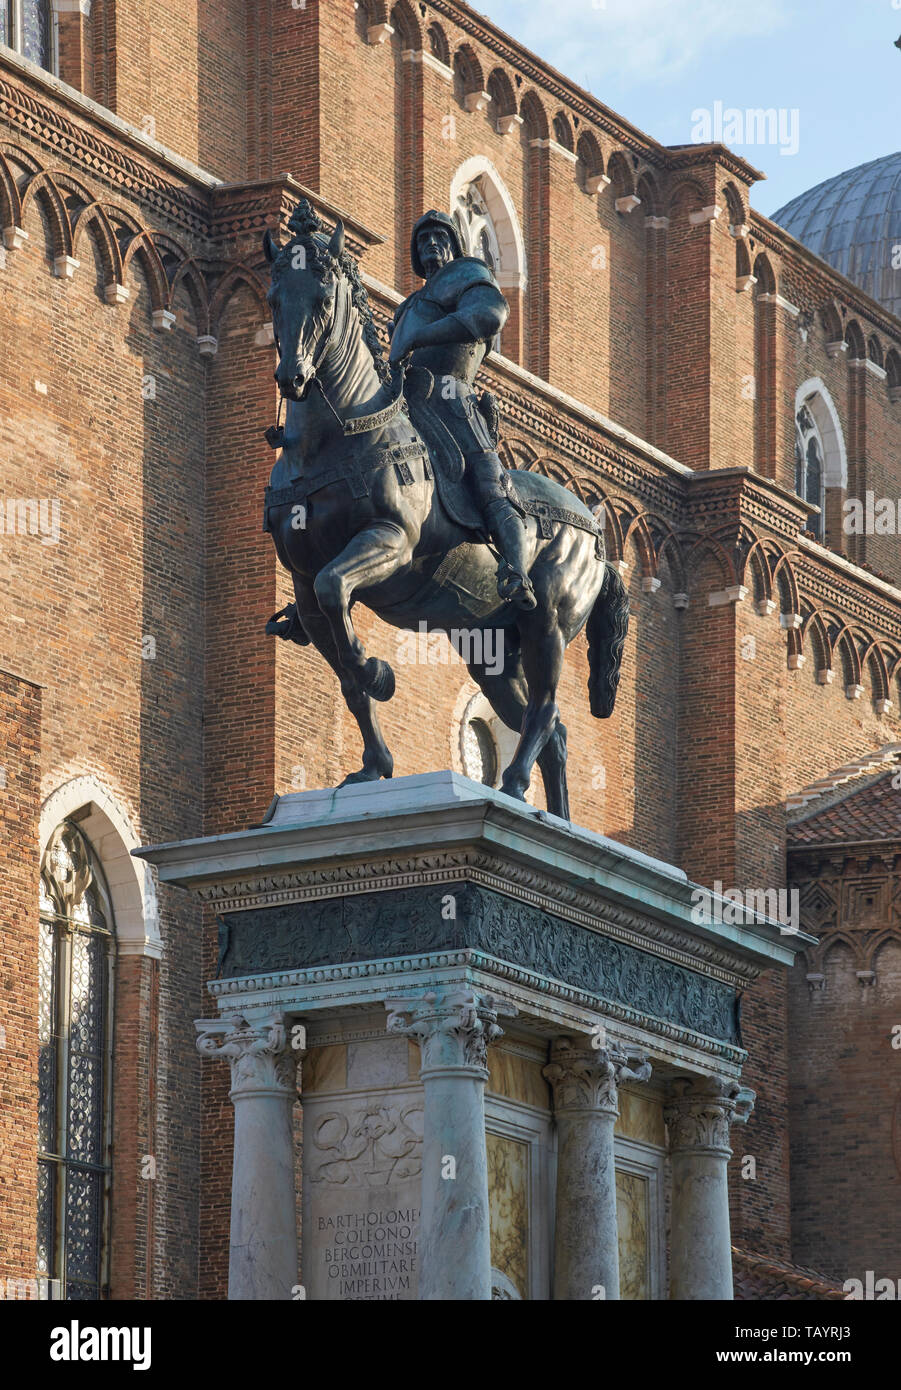 Bartolomeo Colleoni, por Verrocchio. En frente del Campo SS Giovanni e Paolo de Venecia. Iniciado por Verrocchio en 1481, completado y emitidos por Leopardi 1488 Foto de stock